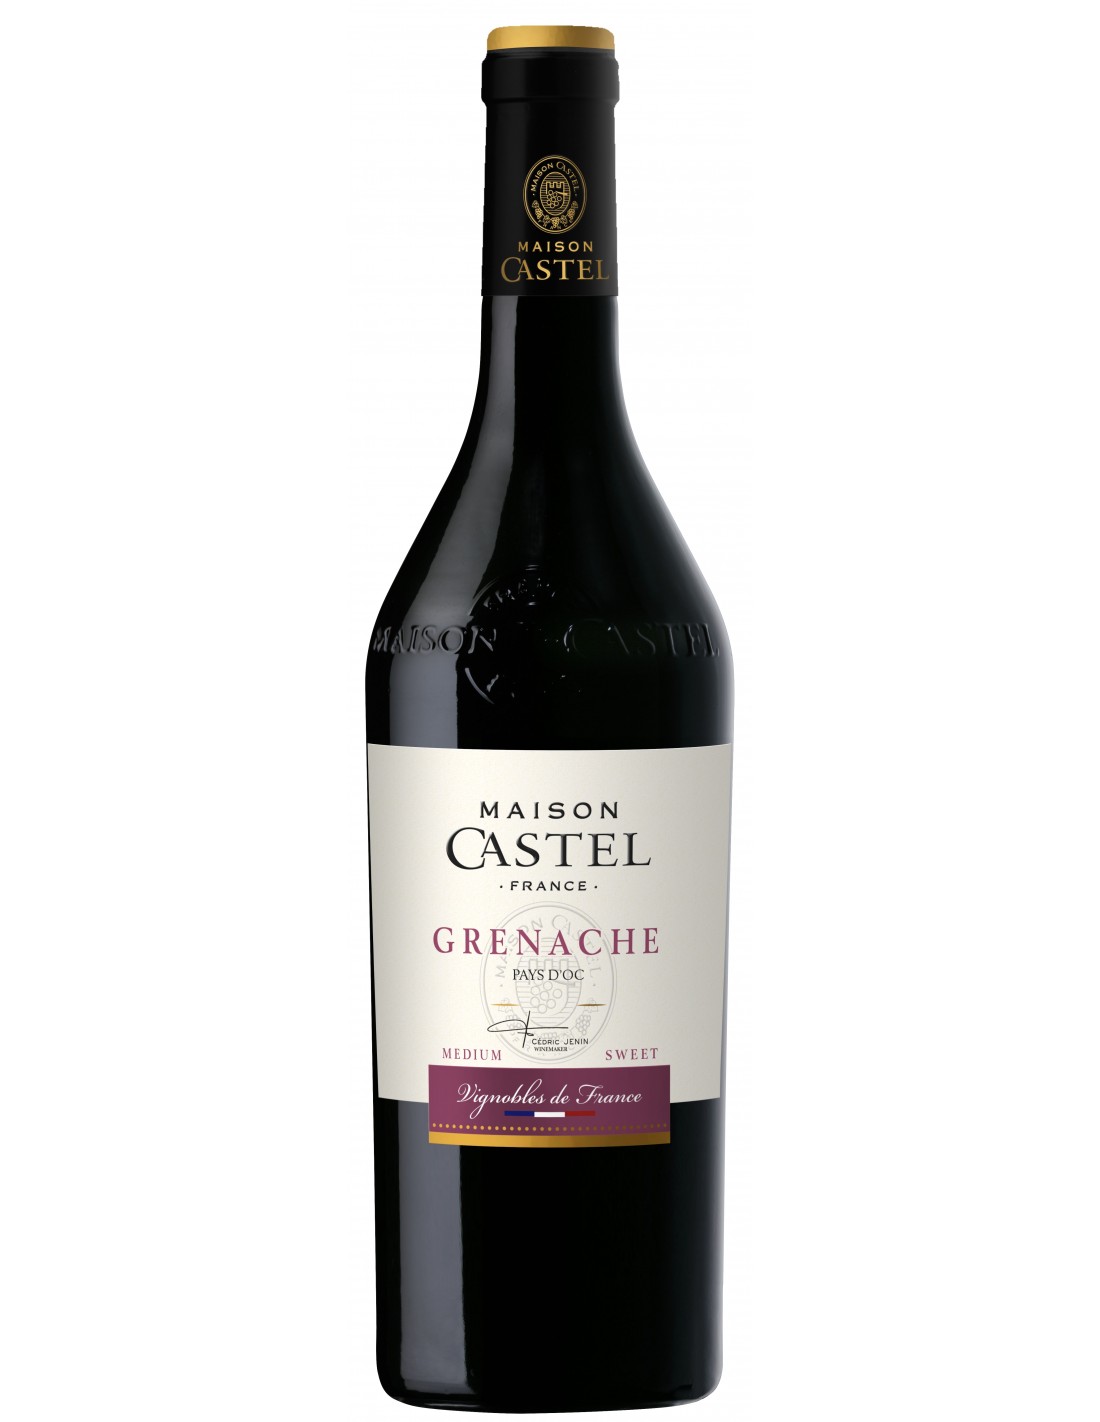 Vin rosu demidulce, Grenache, Maison Castel Pays d’Oc, 0.75L, 12.5% alc., Franta alcooldiscount.ro